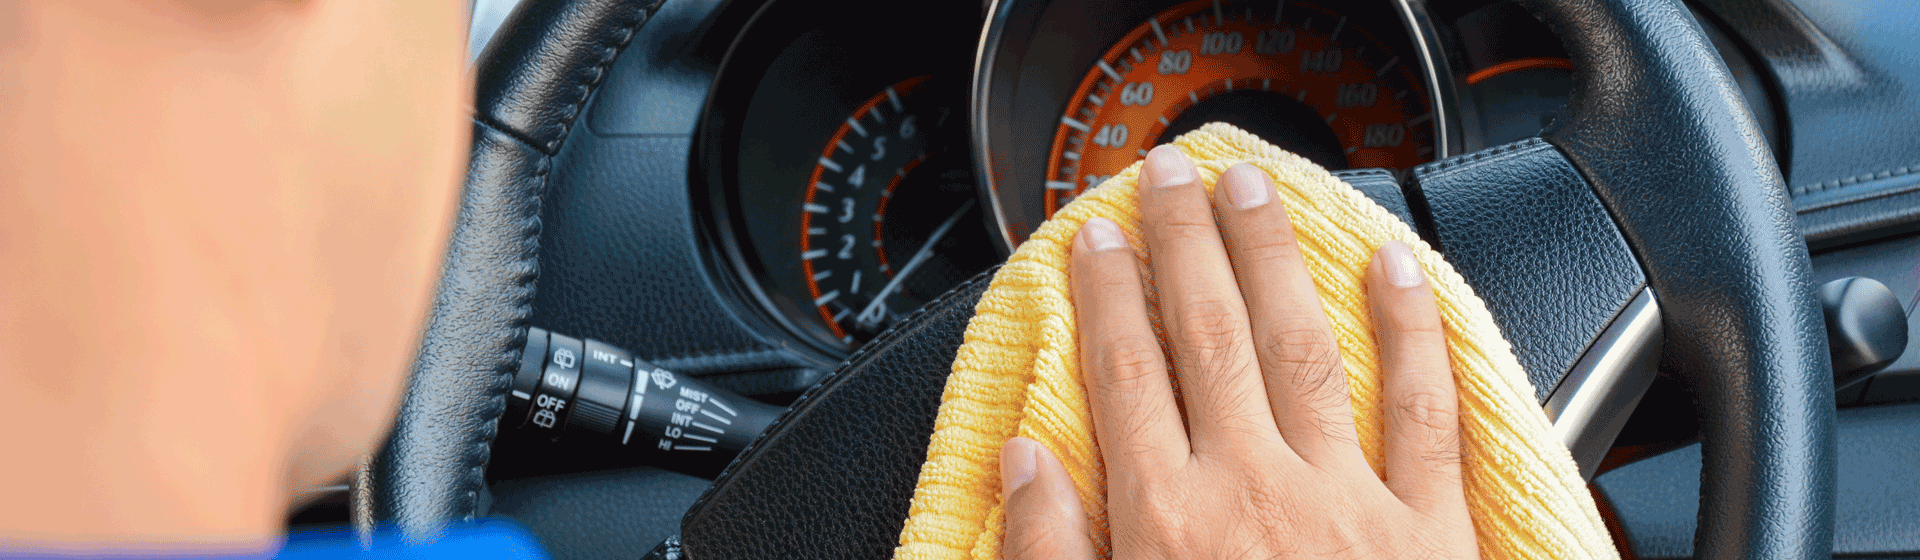 Bien nettoyer l'intérieur de sa voiture : tableau de bord, sièges